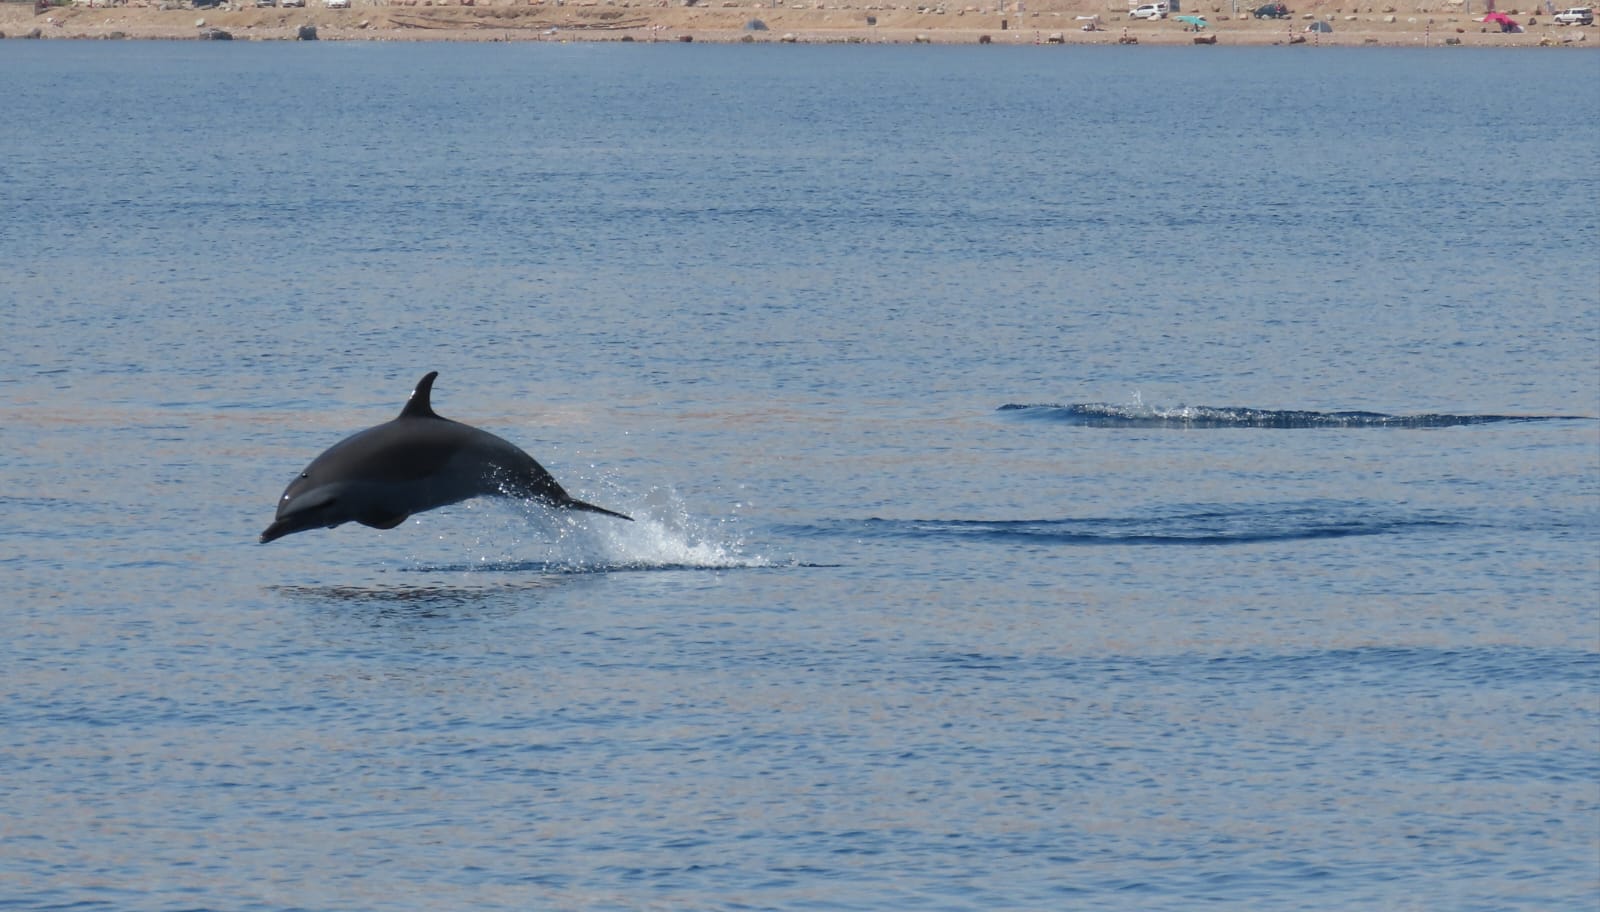 תיעוד ראשון: להקת דולפינים מסוג סטנלה ברודה וארוכת חרטום במפרץ אילת